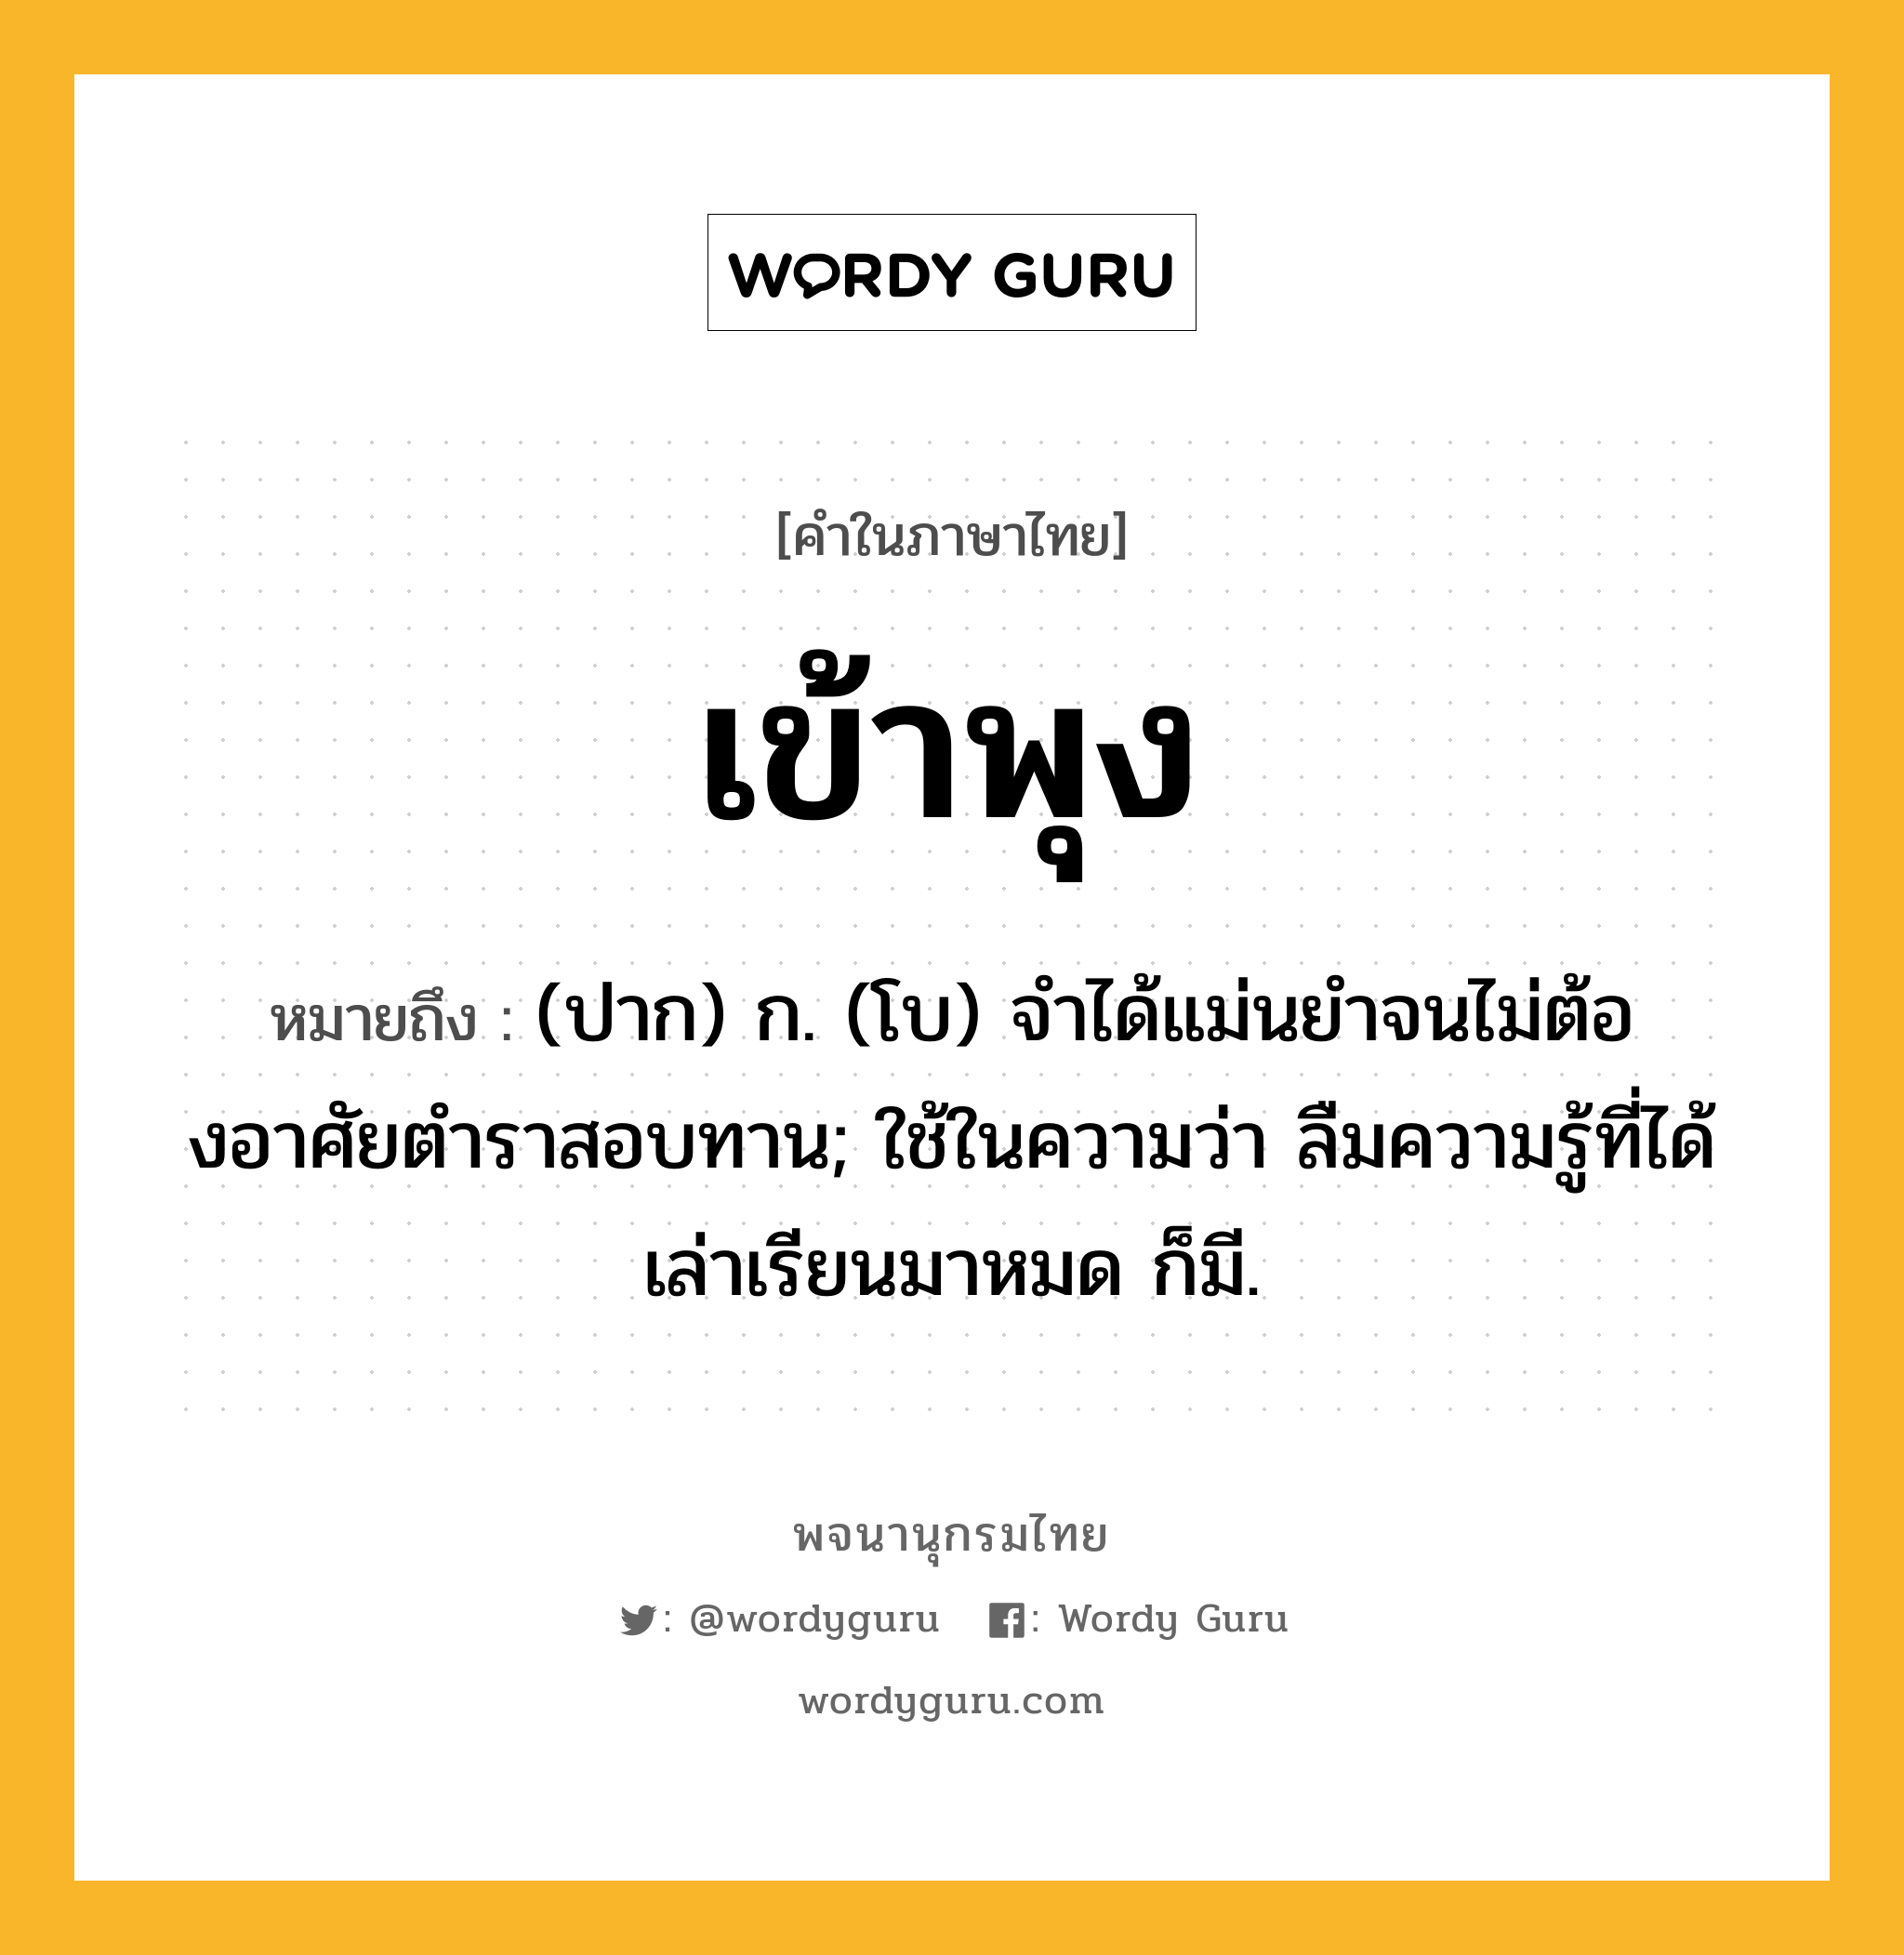 เข้าพุง ความหมาย หมายถึงอะไร?, คำในภาษาไทย เข้าพุง หมายถึง (ปาก) ก. (โบ) จําได้แม่นยําจนไม่ต้องอาศัยตําราสอบทาน; ใช้ในความว่า ลืมความรู้ที่ได้เล่าเรียนมาหมด ก็มี.